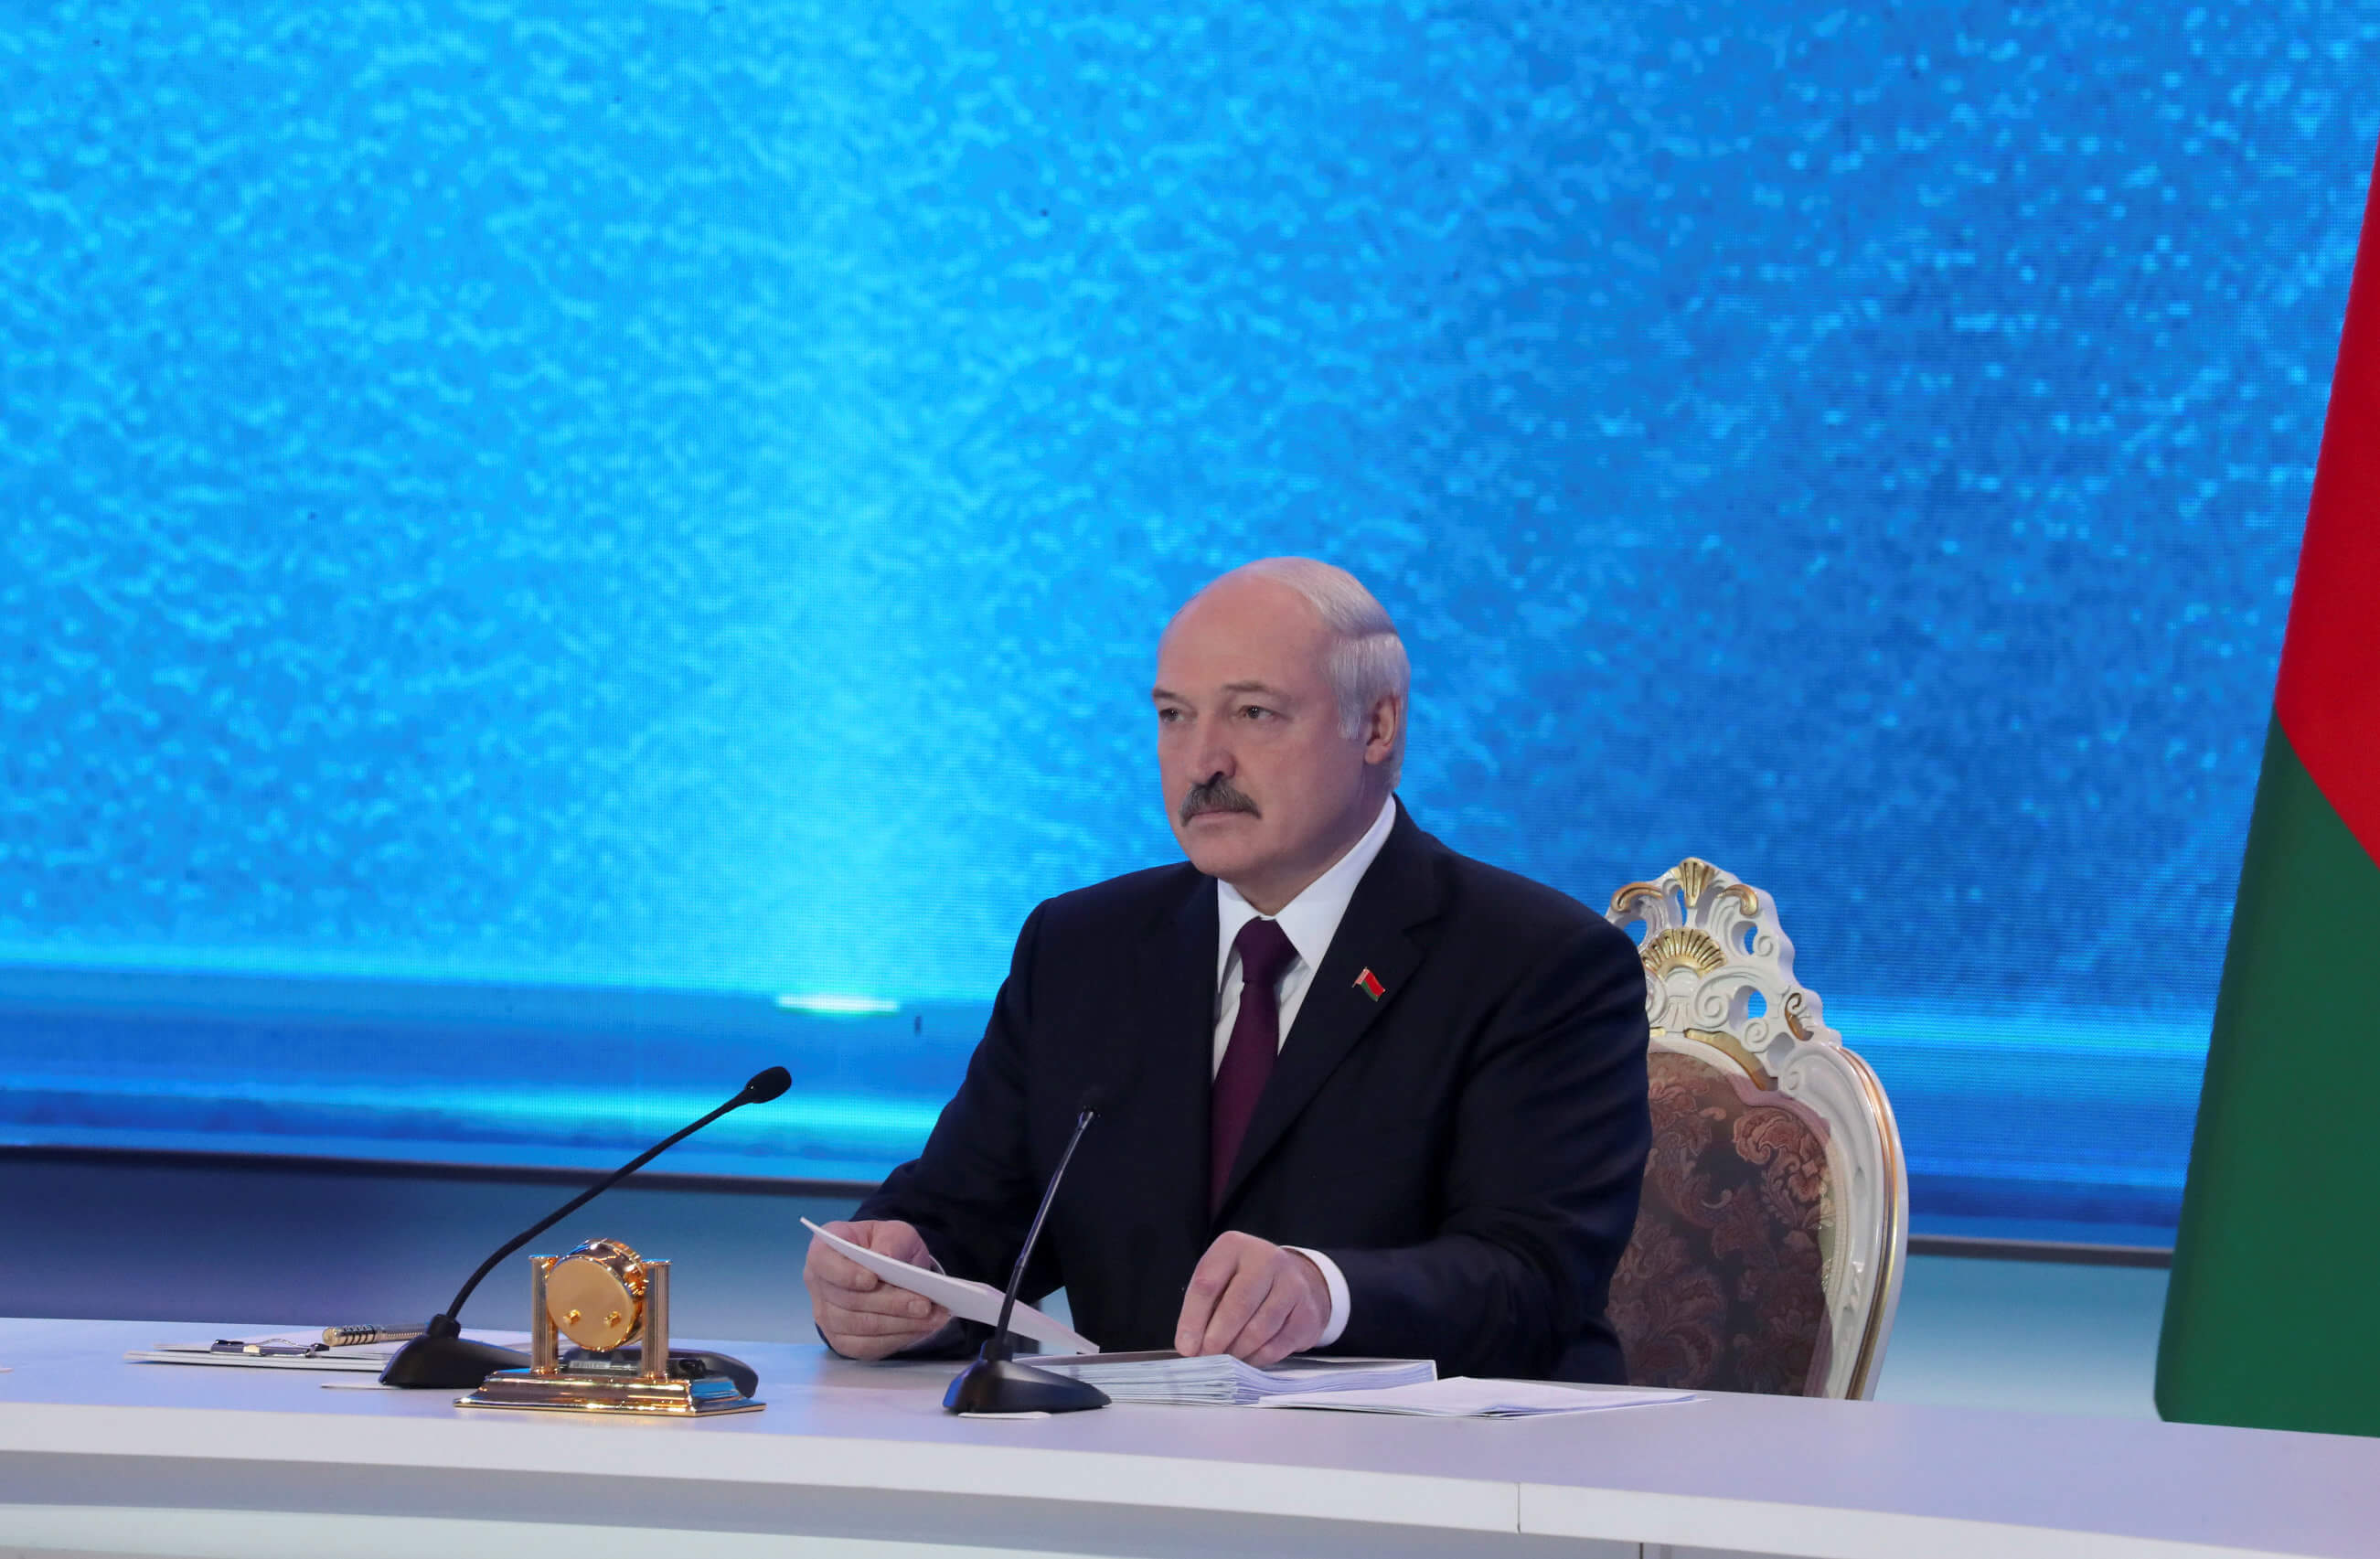 Η Ρωσία μας σπρώχνει στην αγκαλιά της Δύσης λέει ο πρόεδρος στη Λευκορωσία